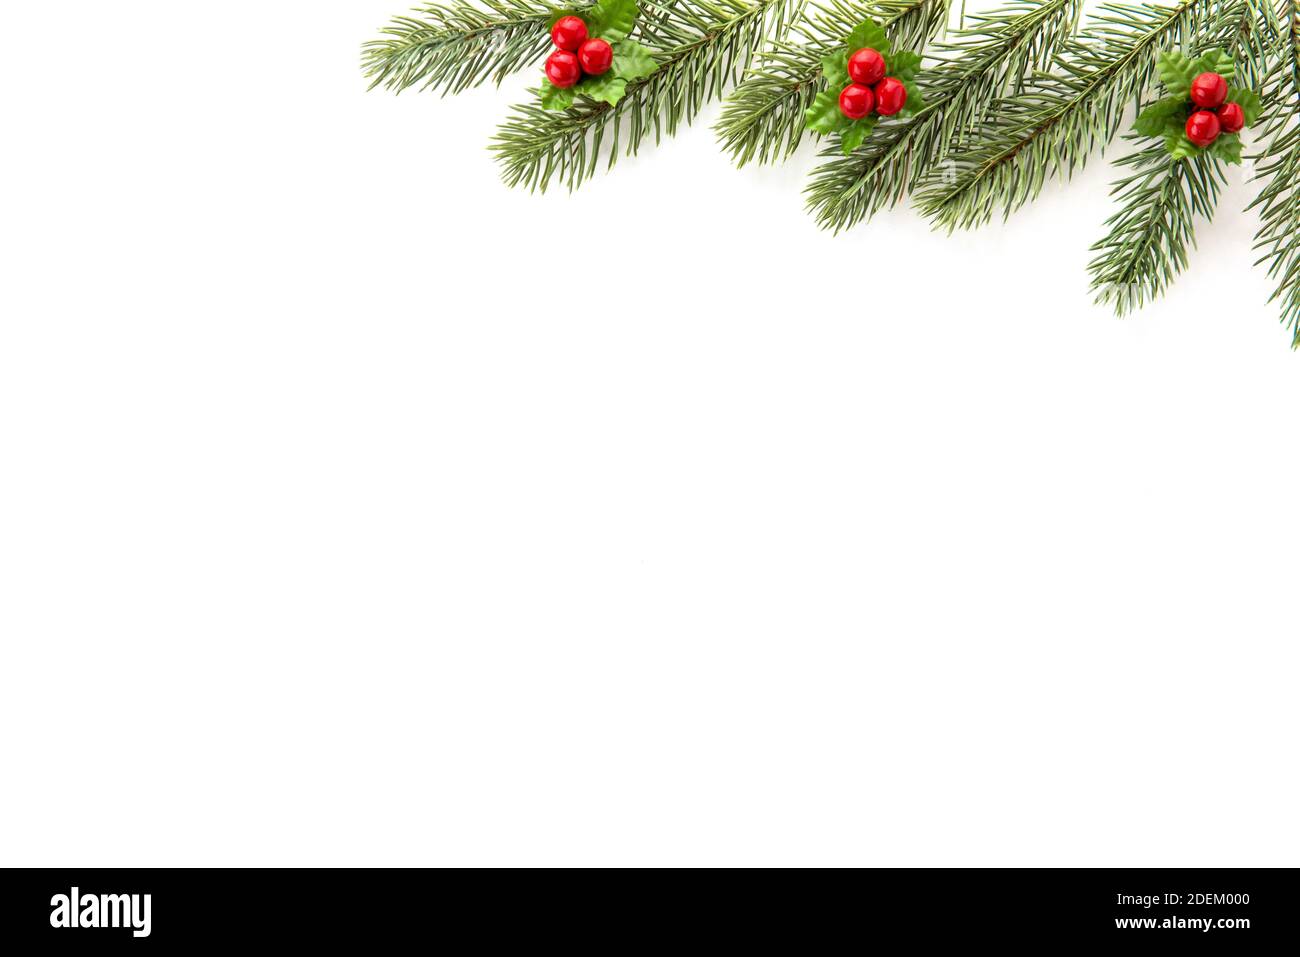 Natale e Capodanno sfondo vista dall'alto bordo design con pino verde, mistetoe, bacche rosse e spazio copia su sfondo bianco Foto Stock